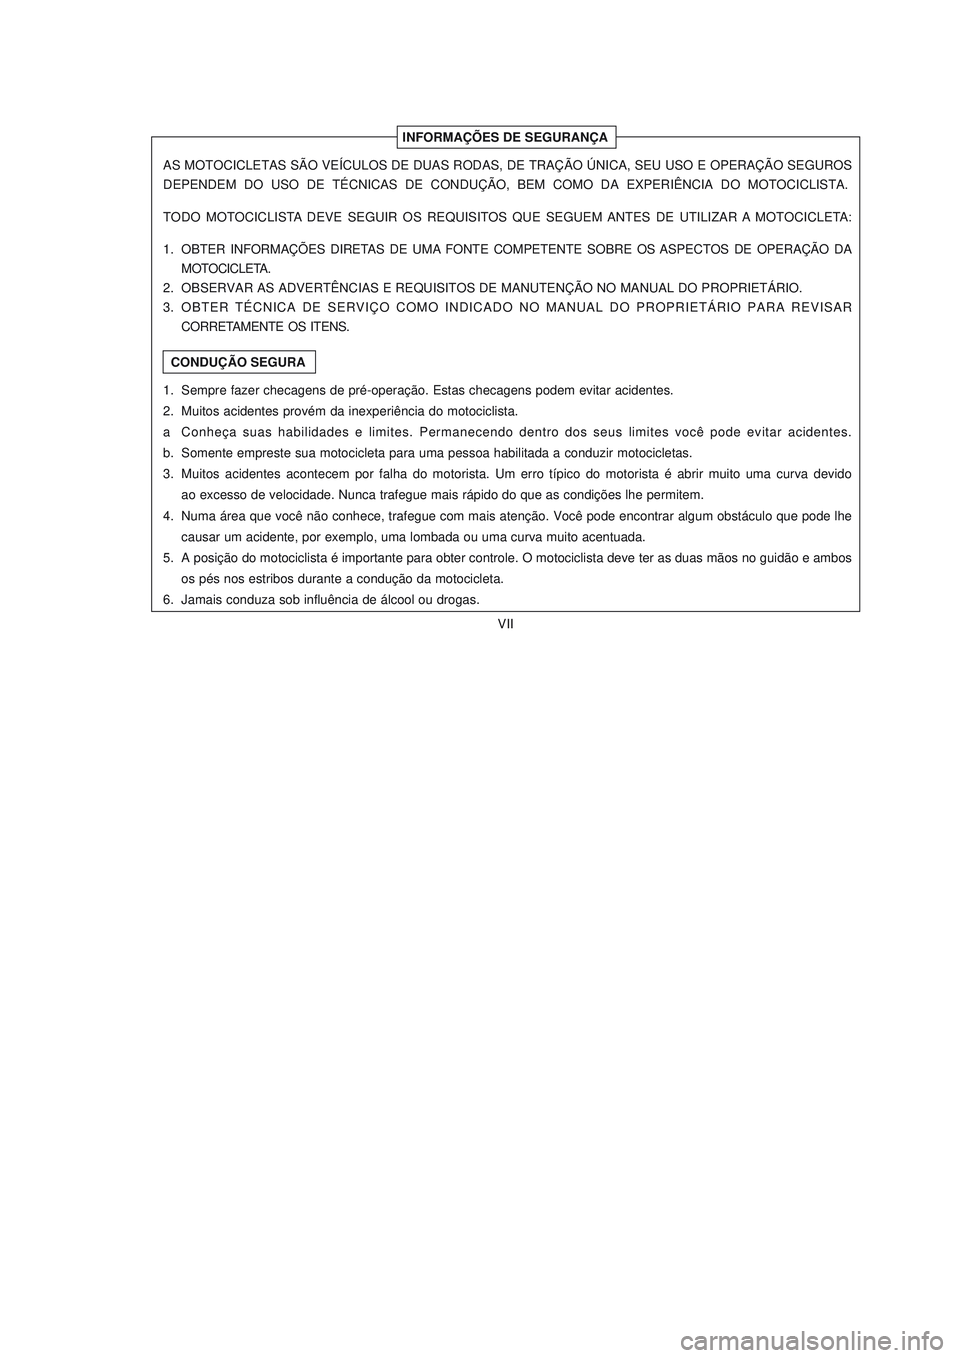 YAMAHA NEO115 2006  Manual de utilização (in Portuguese) VII
VII
INFORMAÇÕES DE SEGURANÇA
CONDUÇÃO SEGURA AS MOTOCICLETAS SÃO VEÍCULOS DE DUAS RODAS, DE TRAÇÃO ÚNICA, SEU USO E OPERAÇÃO SEGUROS
DEPENDEM  DO  USO  DE  TÉCNICAS  DE  CONDUÇÃO,  